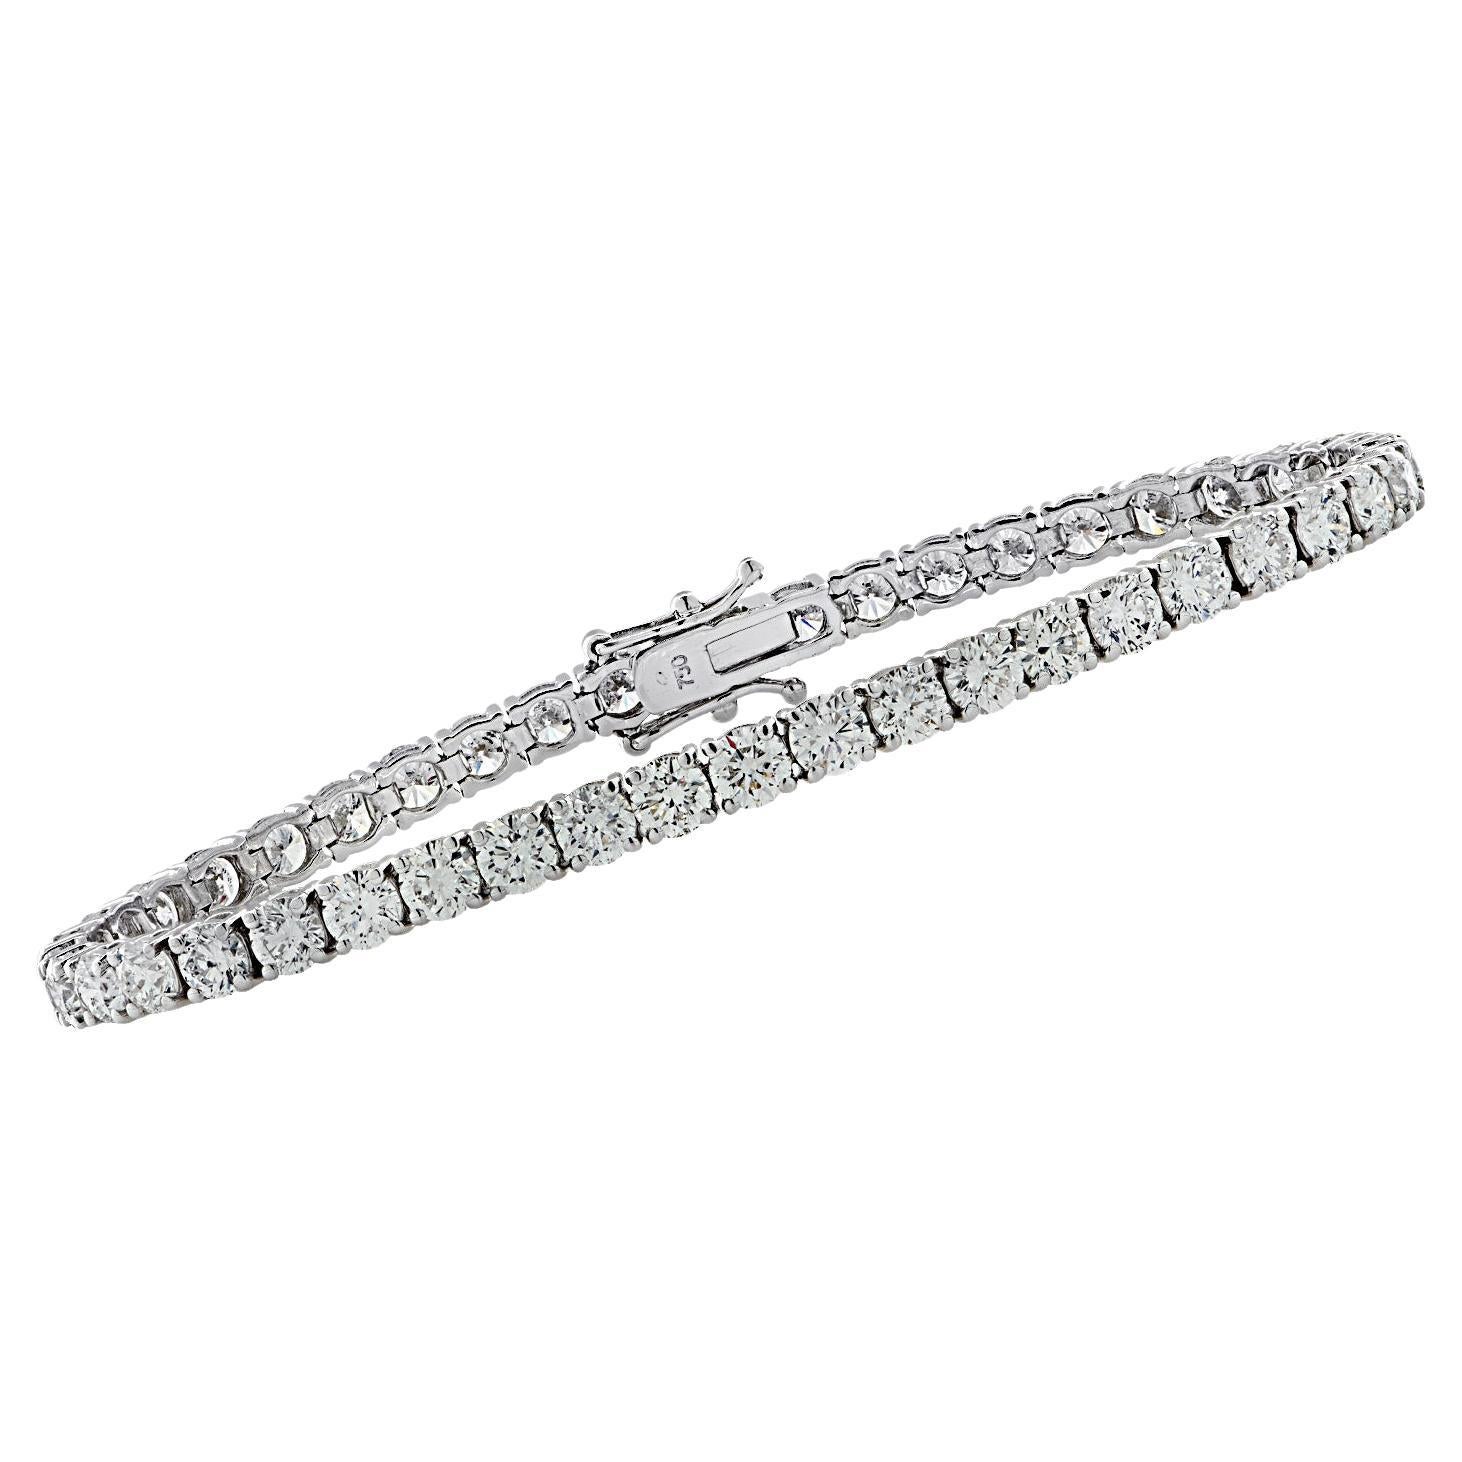 Vivid Diamonds GIA Certified 14.57 Carat Diamond Tennis Bracelet